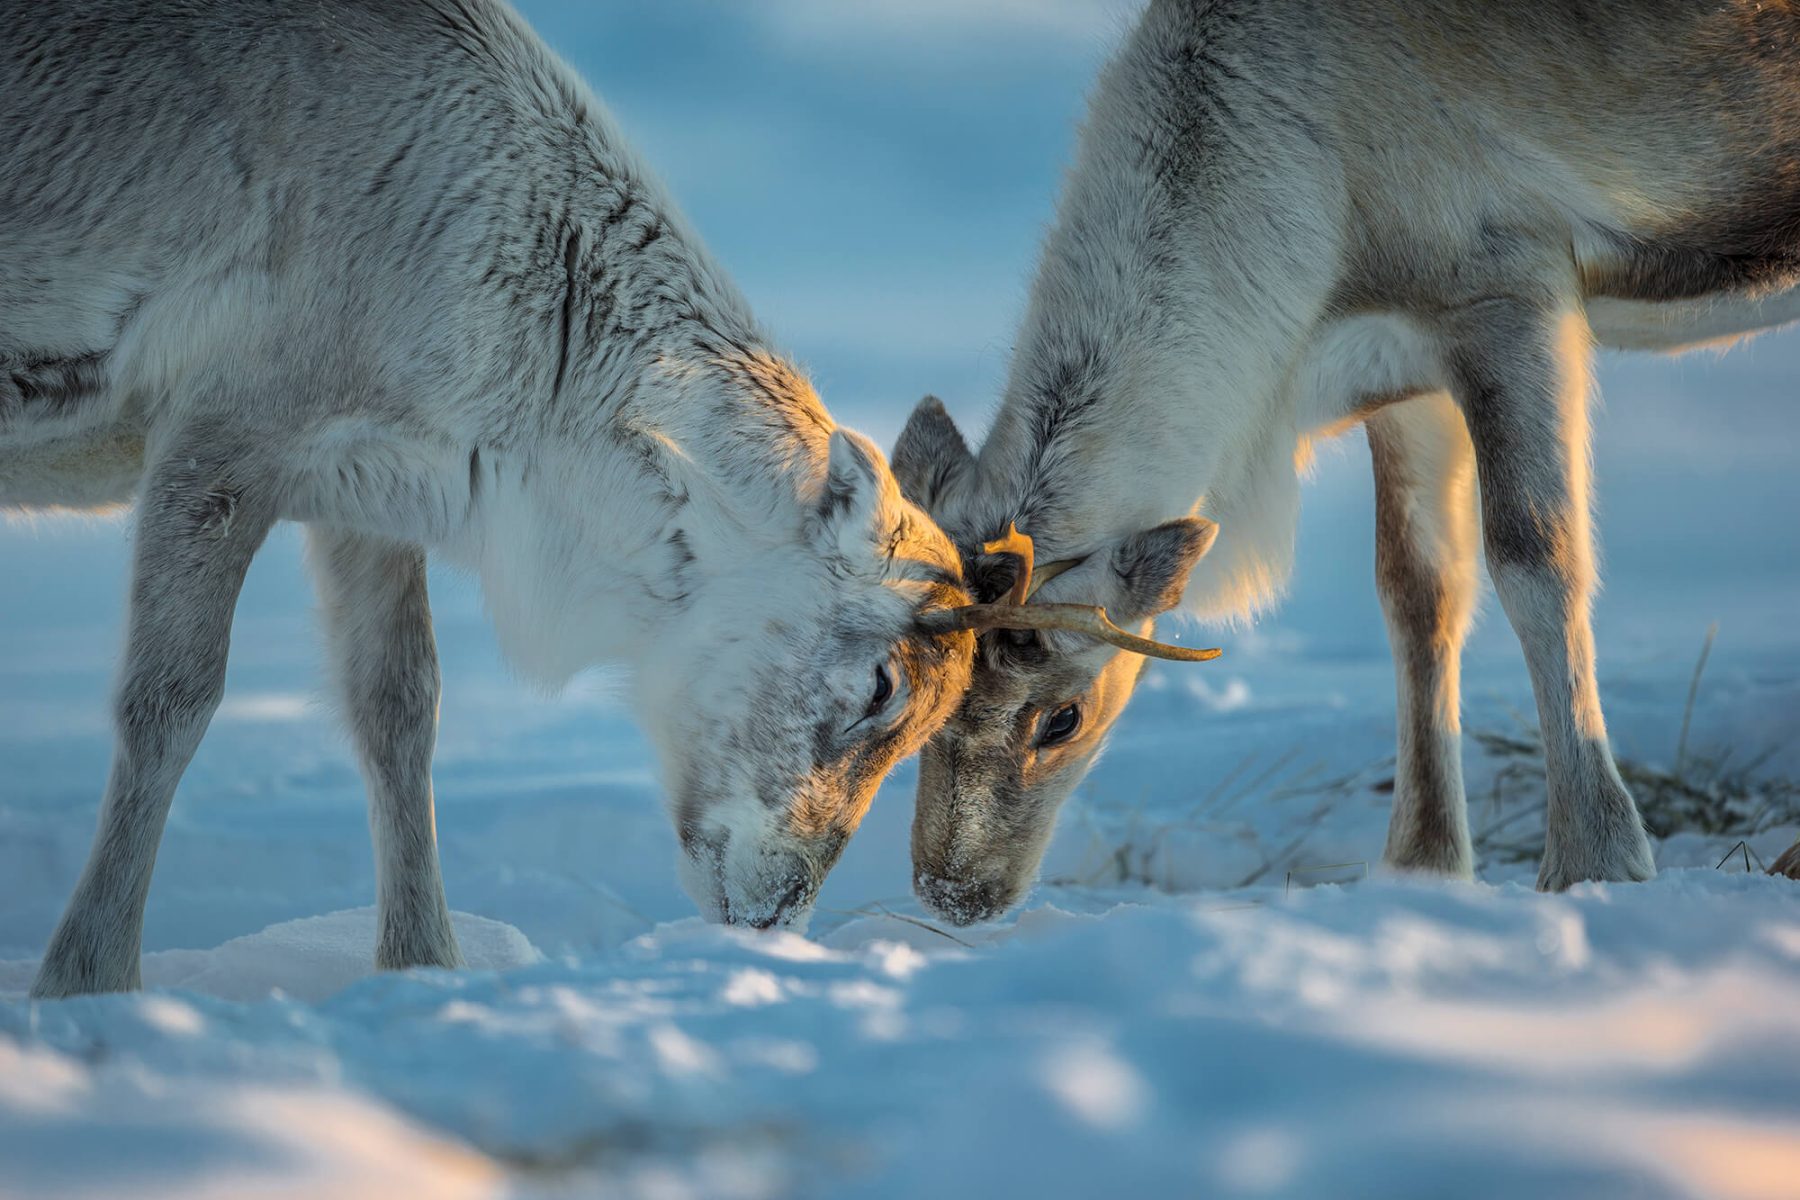 lapland reindeer interaction under warm winter light istk